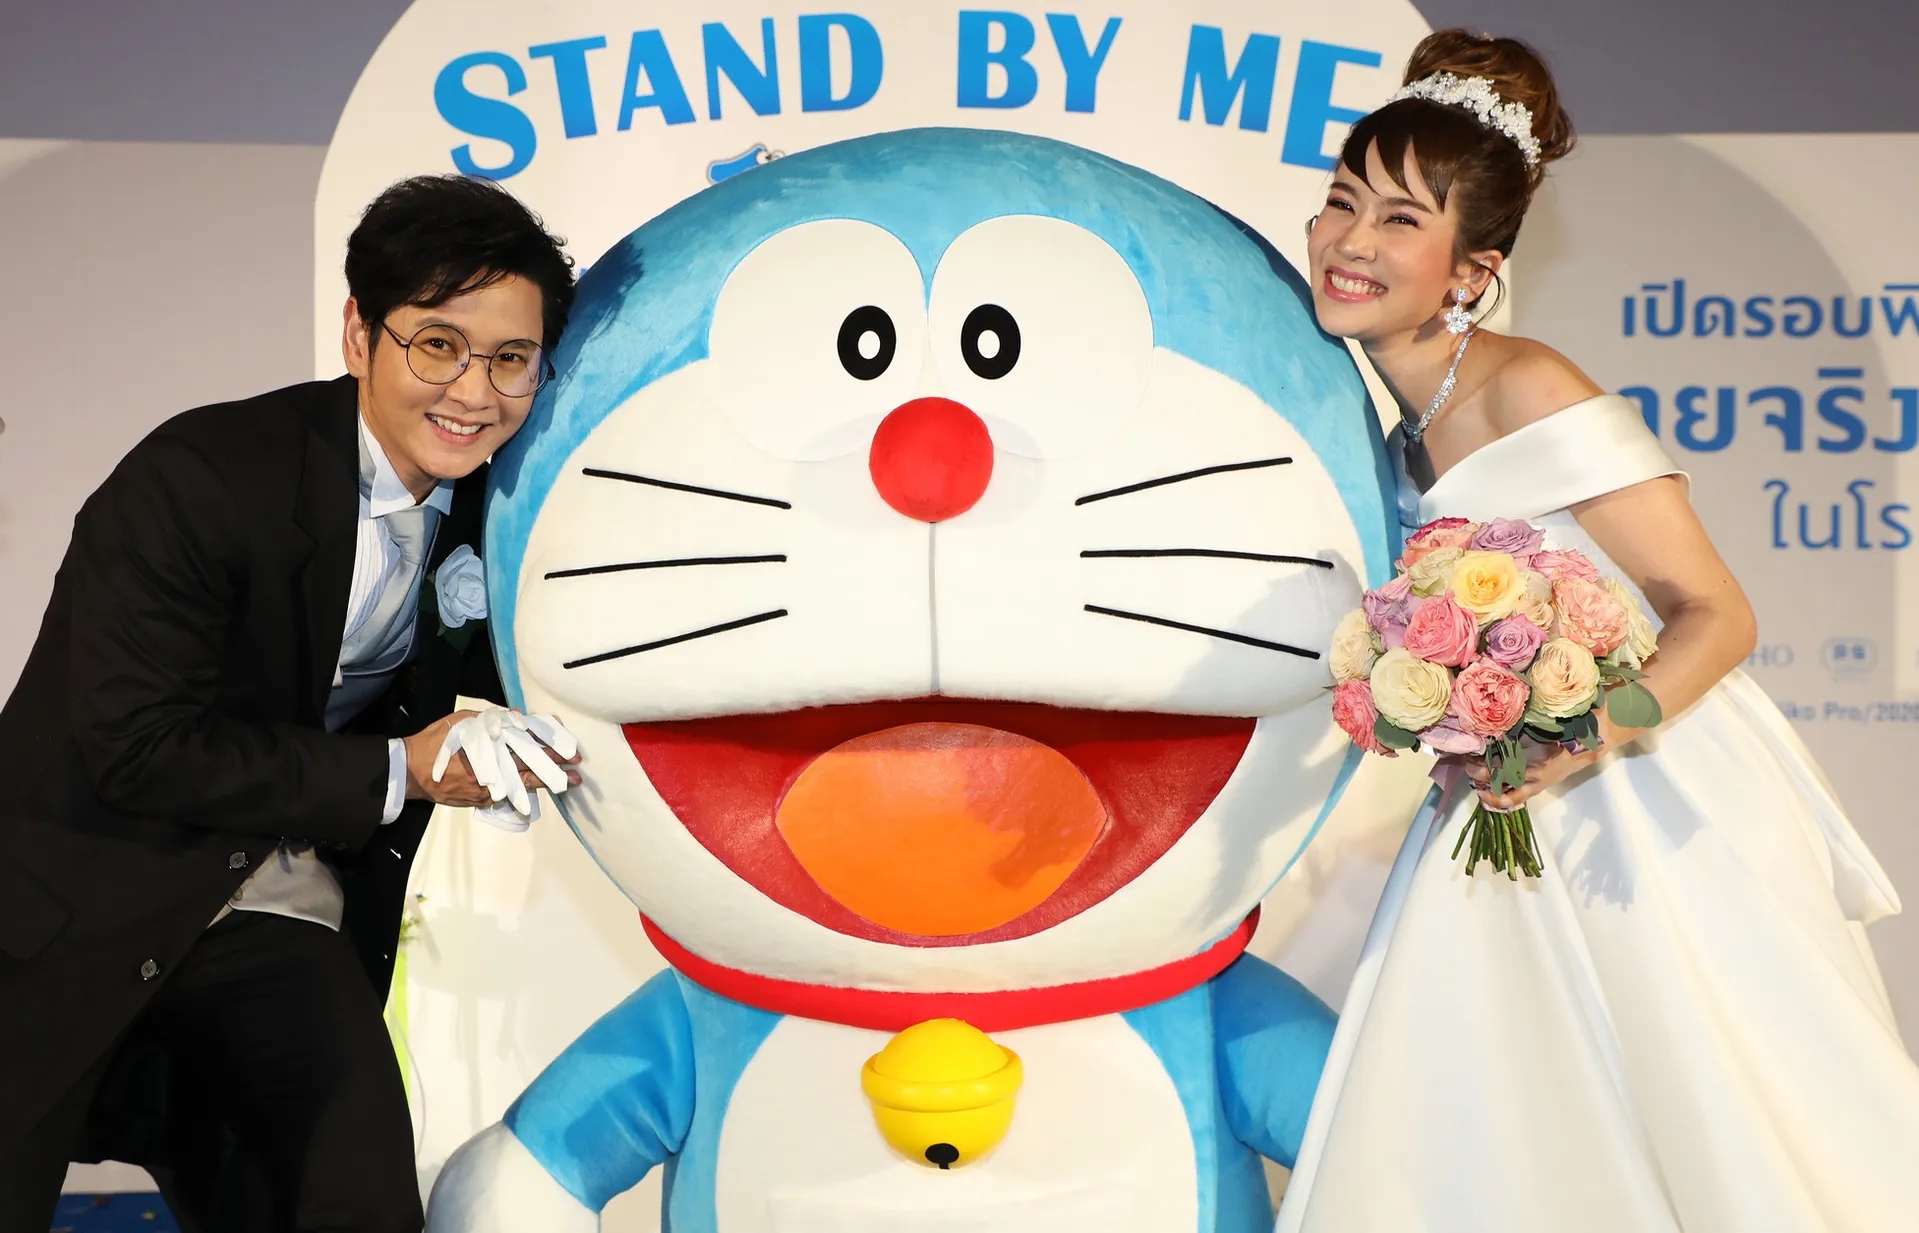 “โต๋-ไบรท์” วิวาห์อบอุ่น ผองเพื่อนร่วมยินดี พากย์หนัง “Stand By Me Doraemon 2”